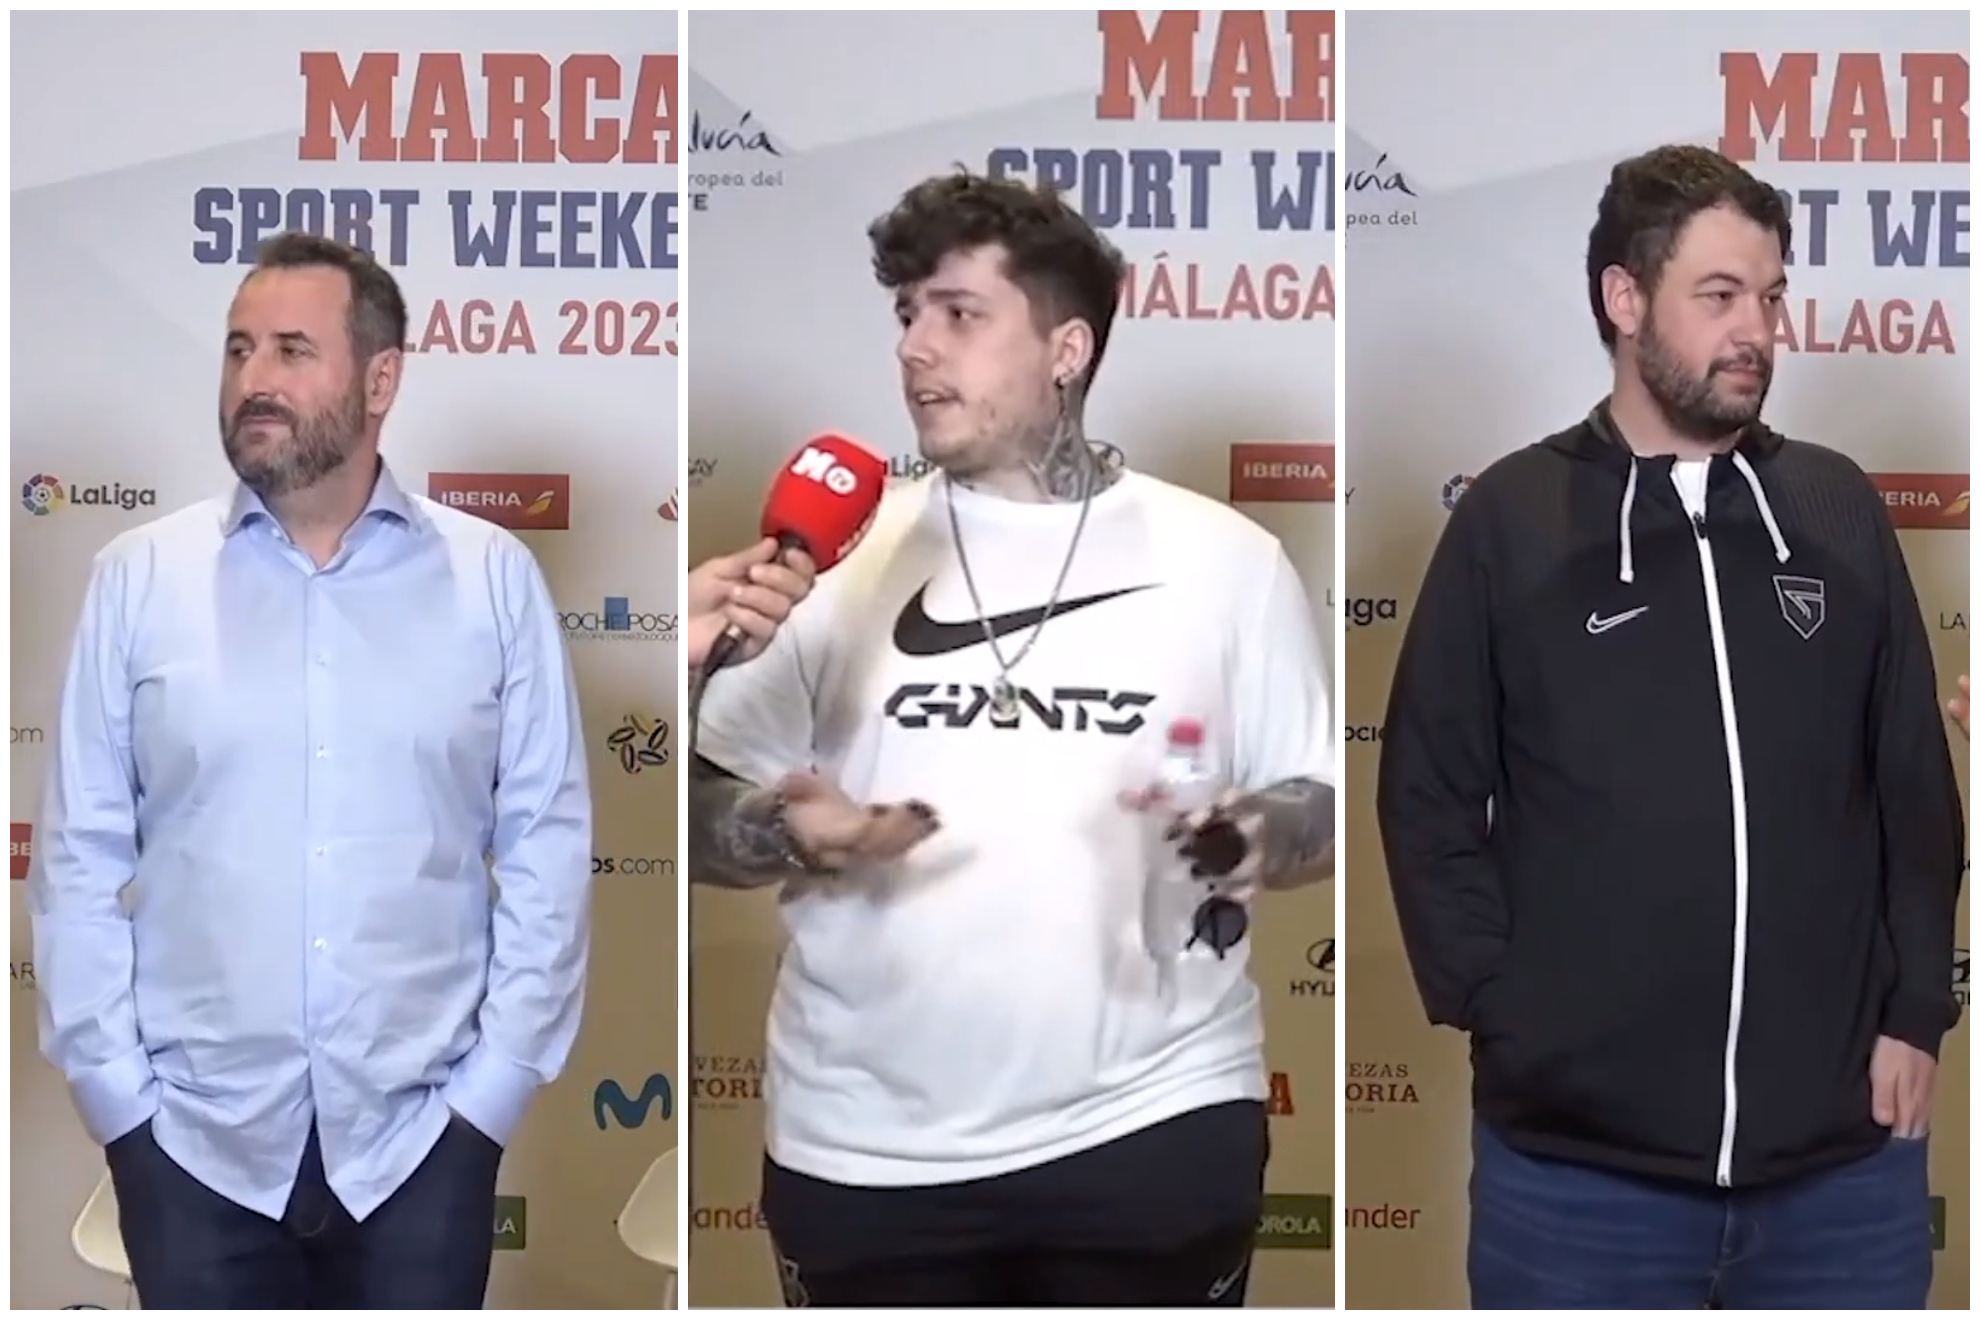 Giants acoge al MARCA Sports Weekend en su casa, Málaga